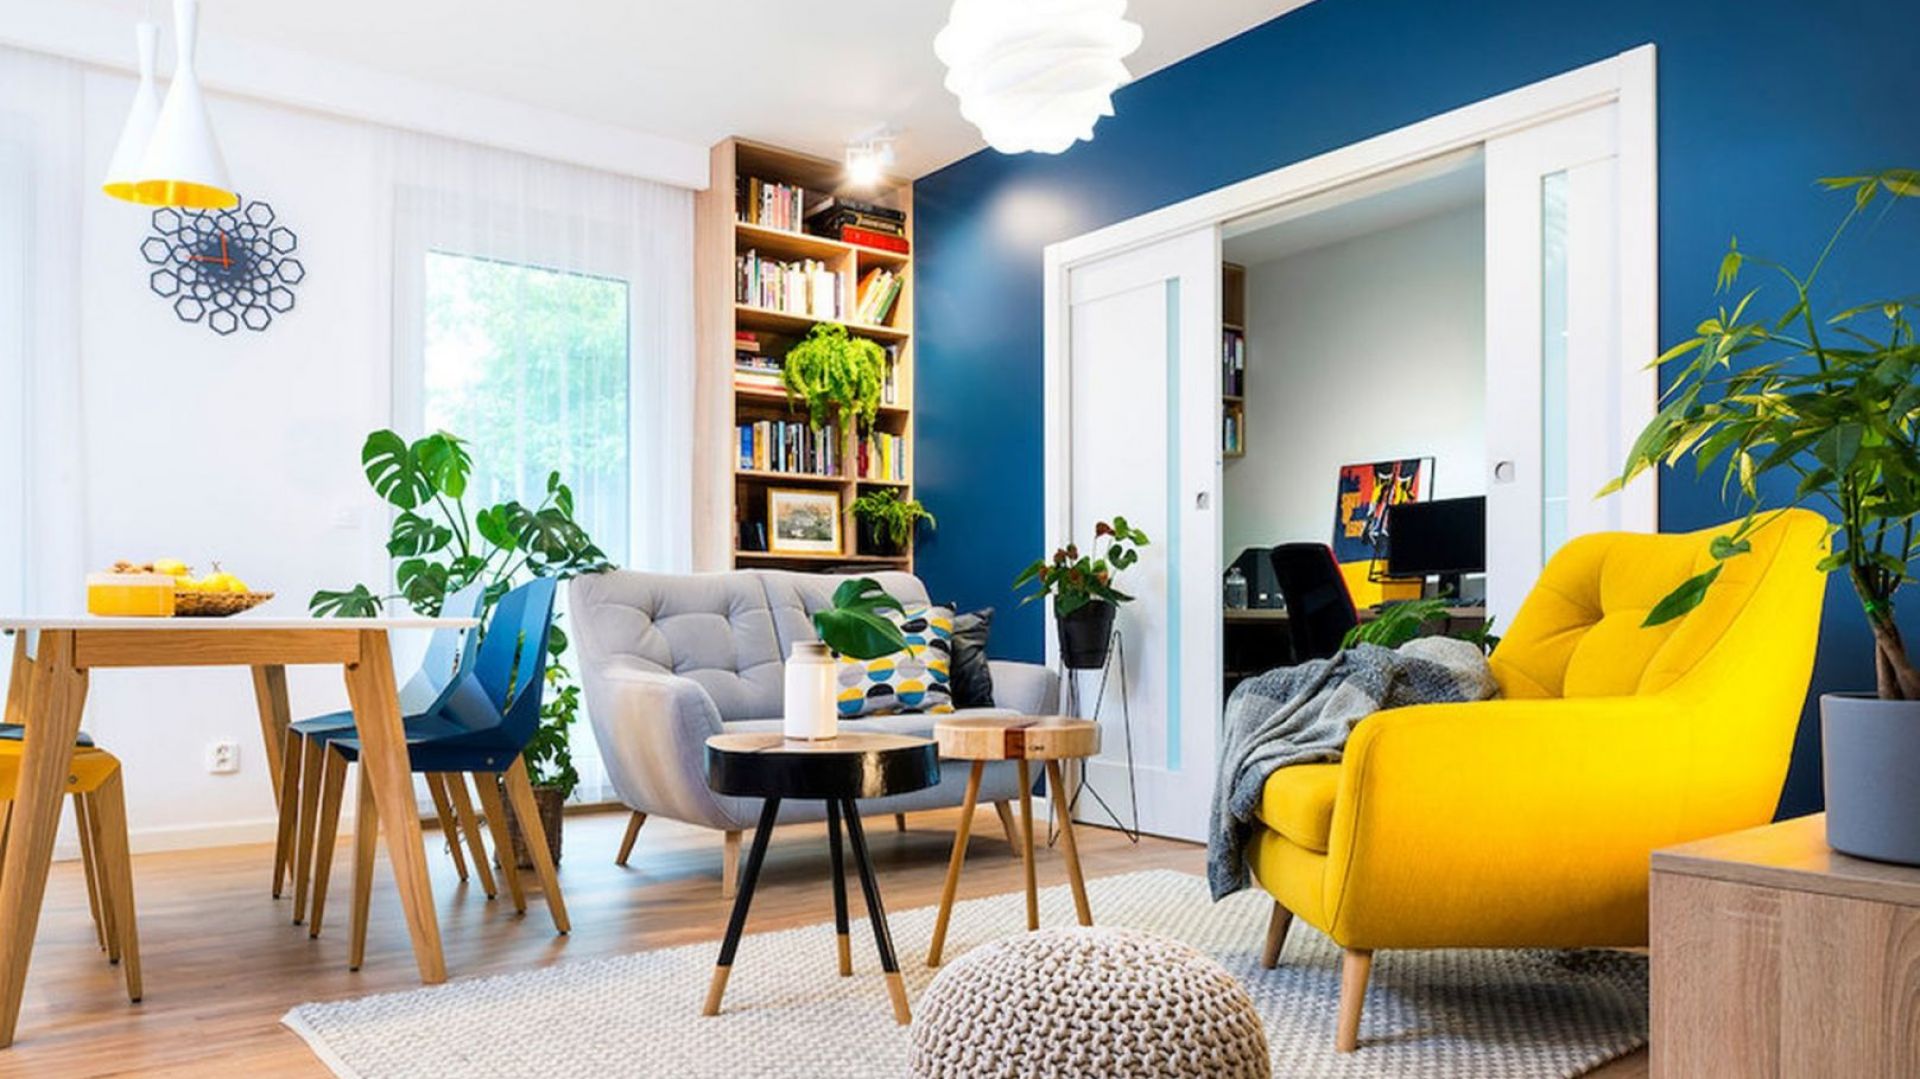 Ściana w salonie: 12 pomysłów na kolor i poradnik, jak dobrze wybrać farbę!